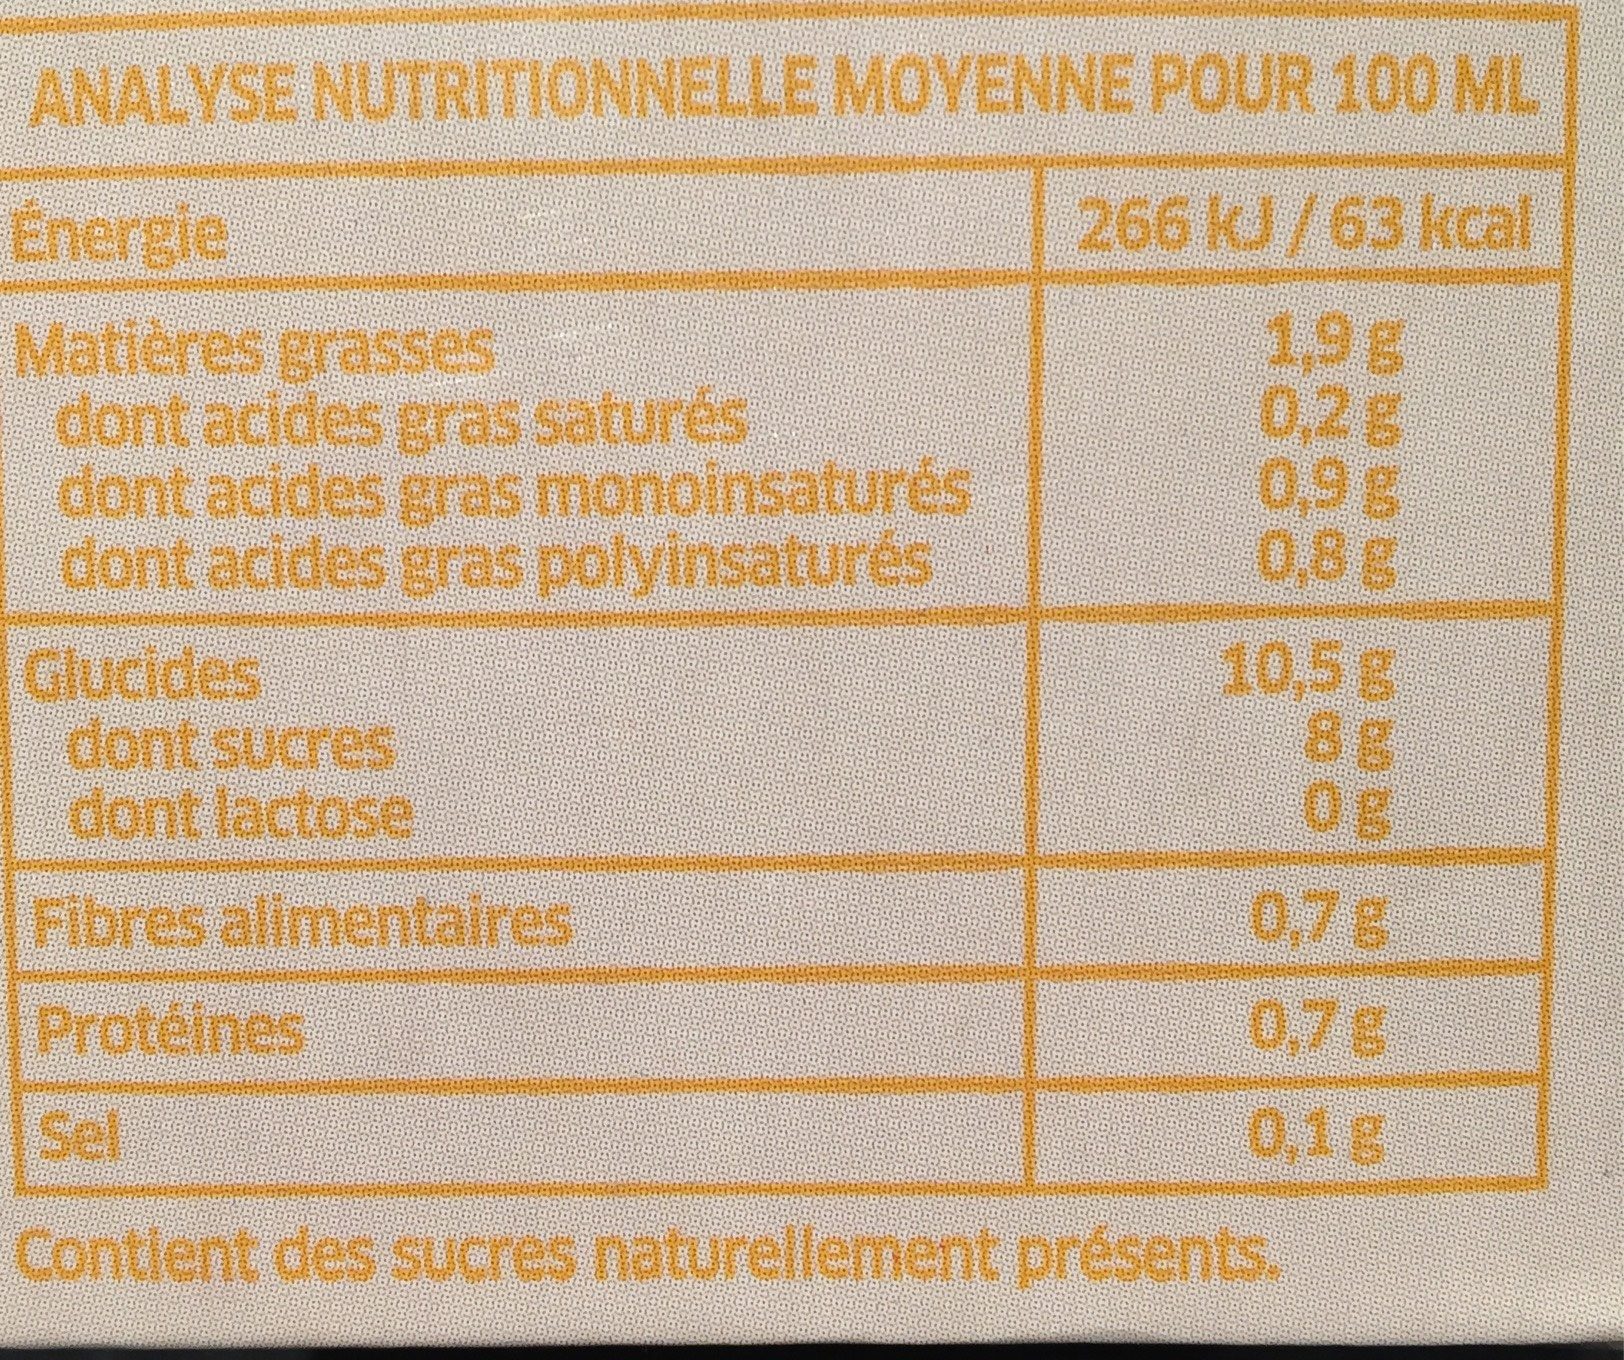 Boisson au Riz et à l'Amande - Nutrition facts - fr